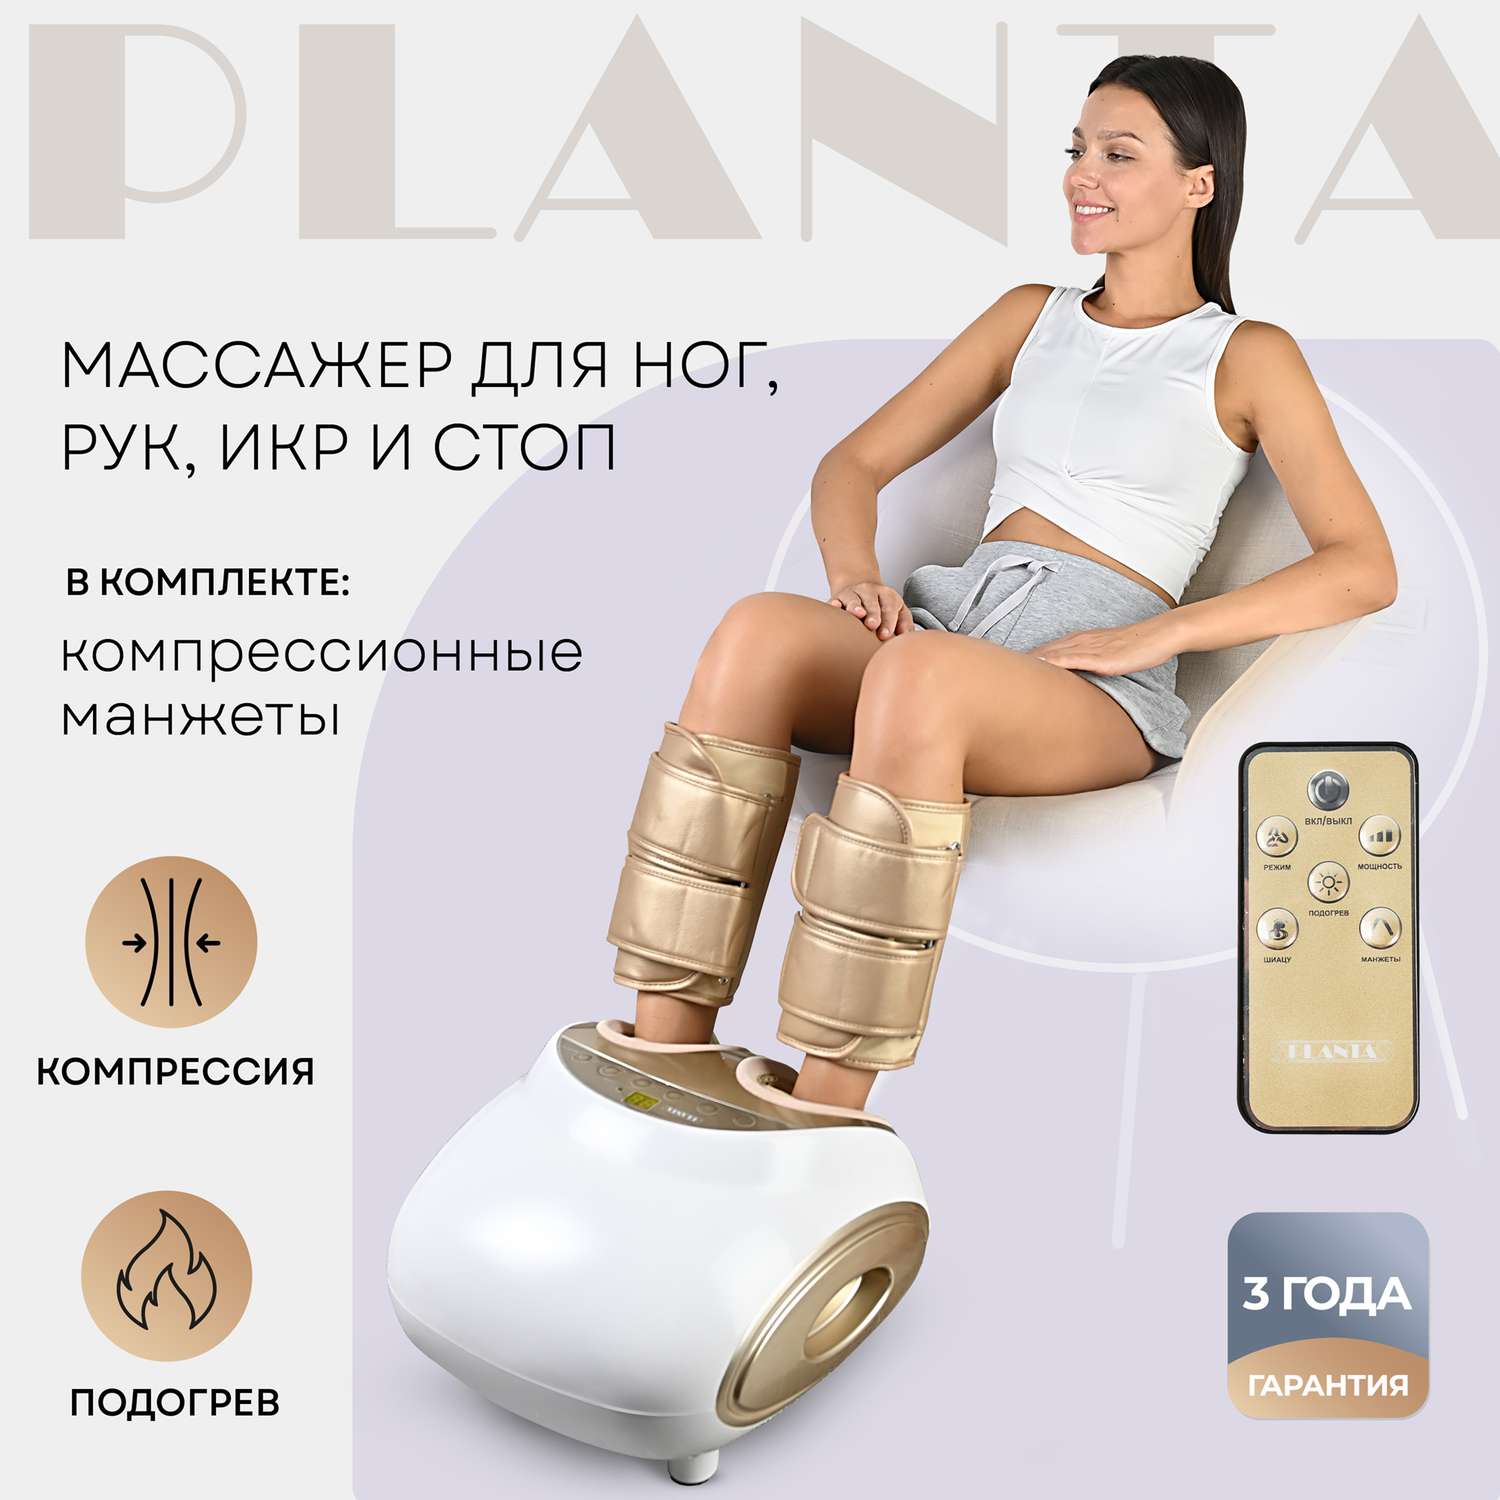 Массажер для ног Planta с подогревом и компрессионными манжетами 3 в 1 MF-11 4 вида массажа Шиацу лимфодренажный - фото 1